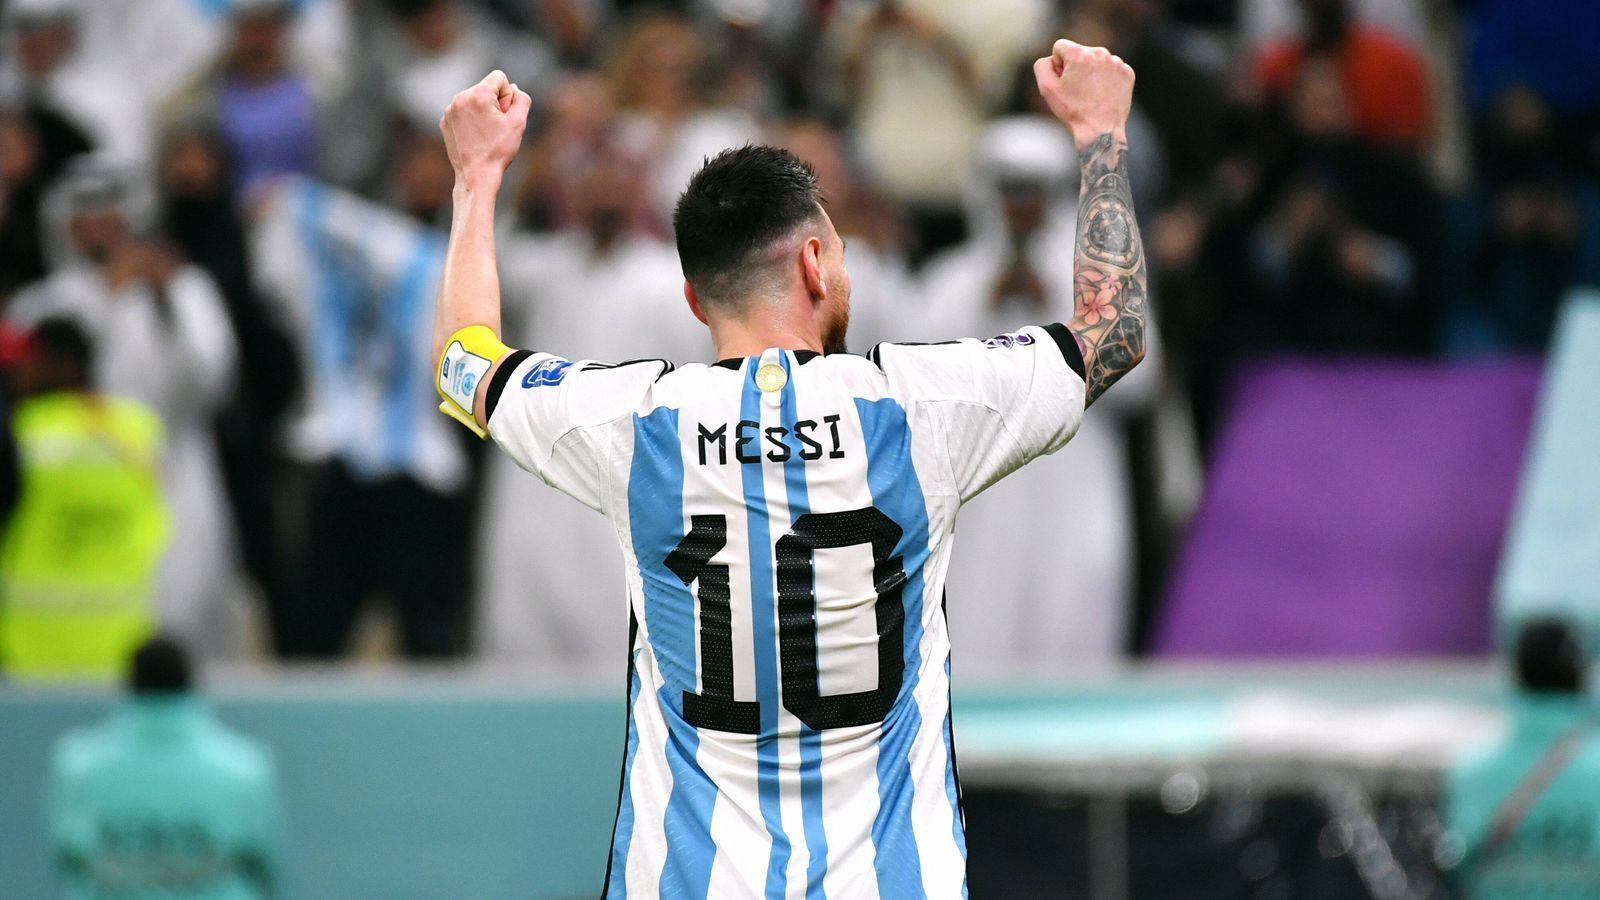 
                <strong>Am häufigsten Kapitän Argentiniens (geknackt, jetzt 19 Mal) </strong><br>
                Messi führte Argentinien im Finale in Katar zum insgesamt 19. Mal als Kapitän bei Weltmeisterschaften auf das Feld. Damit überholt er im landesinternen Rennen die Legende Diego Maradona (16 mal Kapitän) und Javier Mascherano (12 mal Kapitän). Vor dem Turnier in Katar war Messi bei zwölf WM-Spielen Spielführer Argentiniens, nach drei Gruppenspielen, sowie dem Achtel-, Viertel-, Halbfinale und Finale hat sich Messi auch diesen individuellen Rekord gesichert.
              